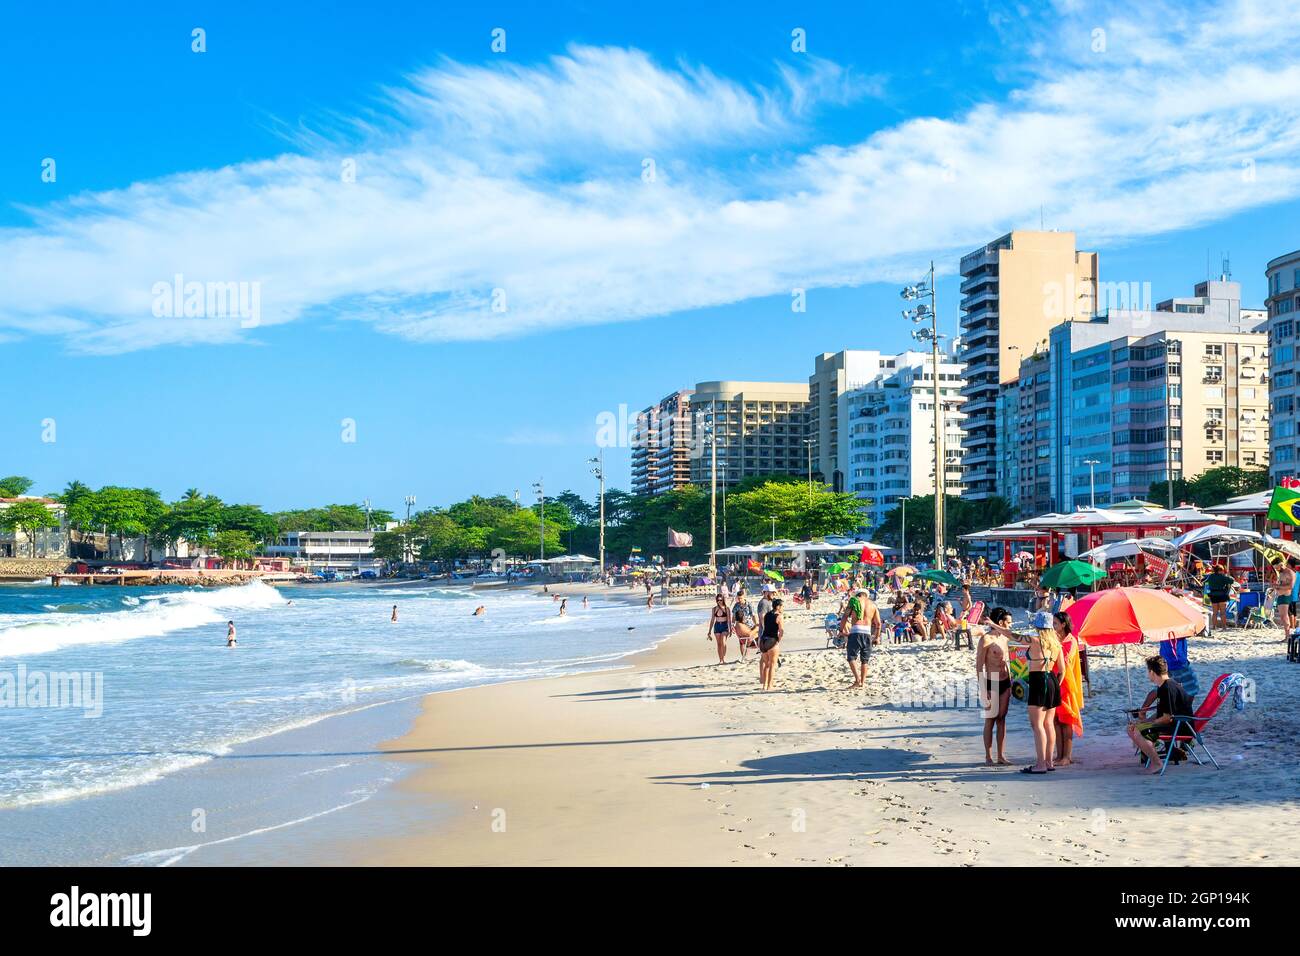 Menschen im weißen Sand des Strandes von Coabba in Rio de Janeiro, Brasilien. Dieser Ort ist eine berühmte Touristenattraktion in der Stadt. Stockfoto